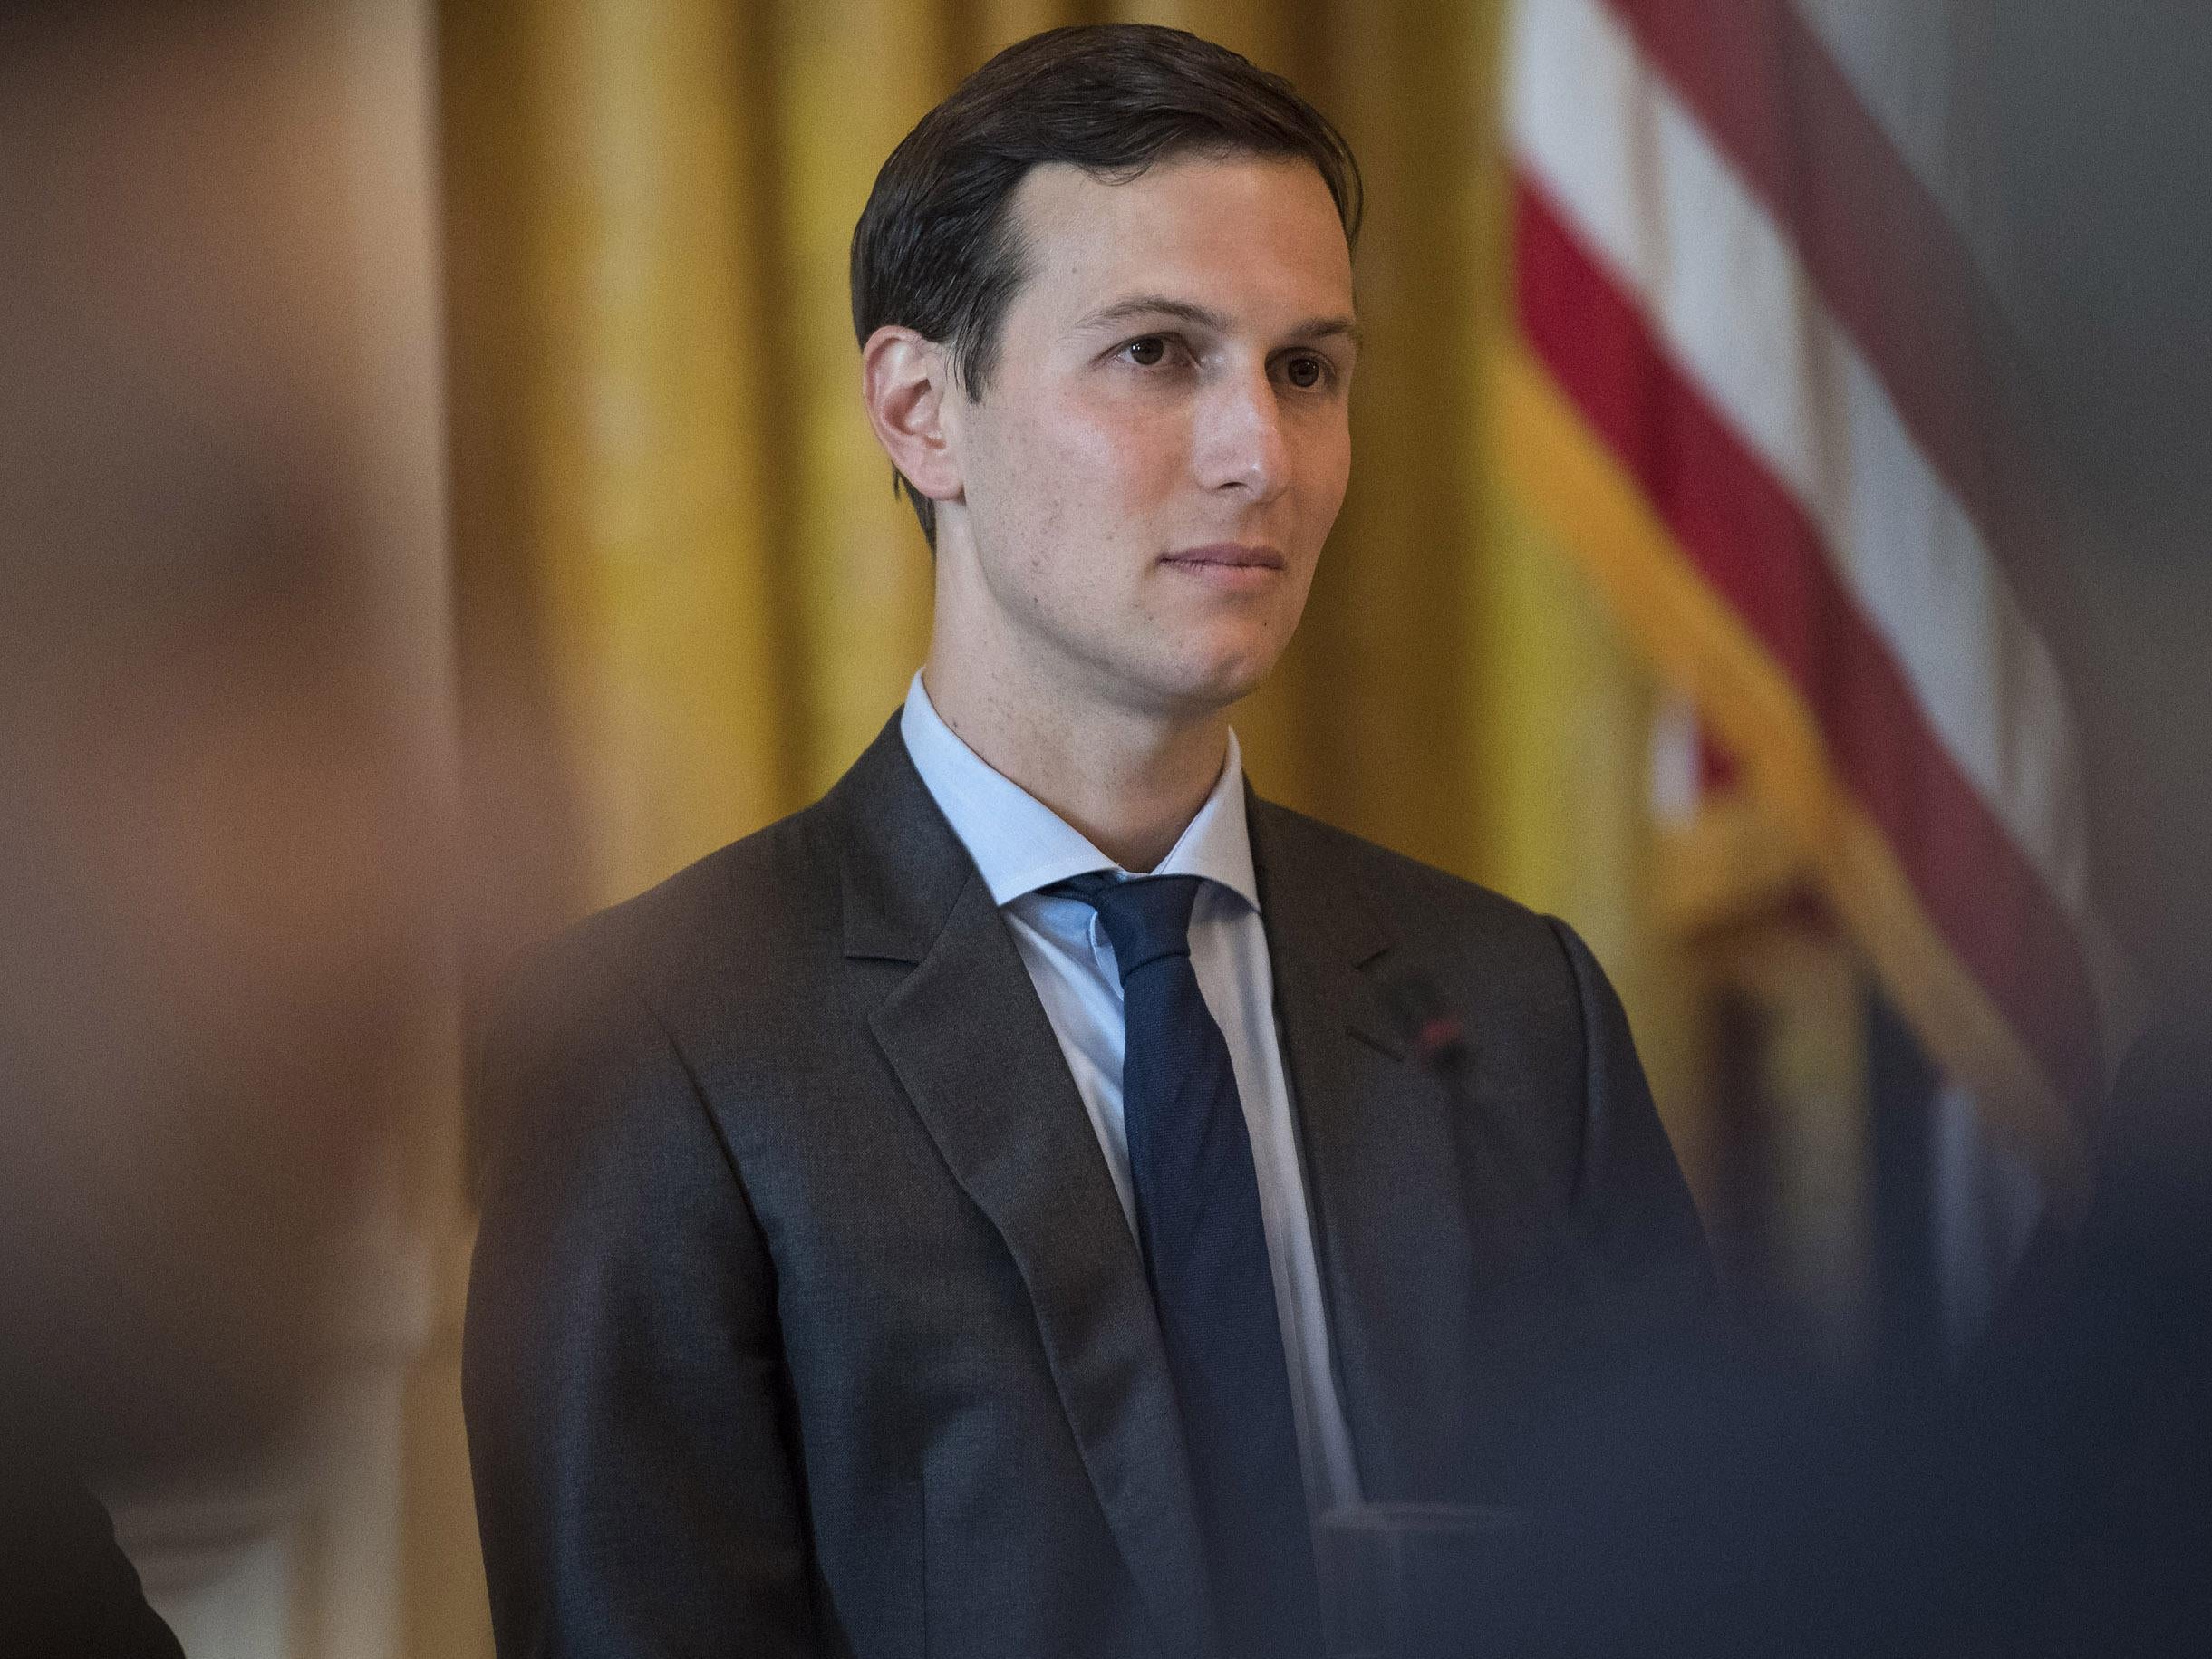 White House senior adviser and the President's son-in-law Jared Kushner